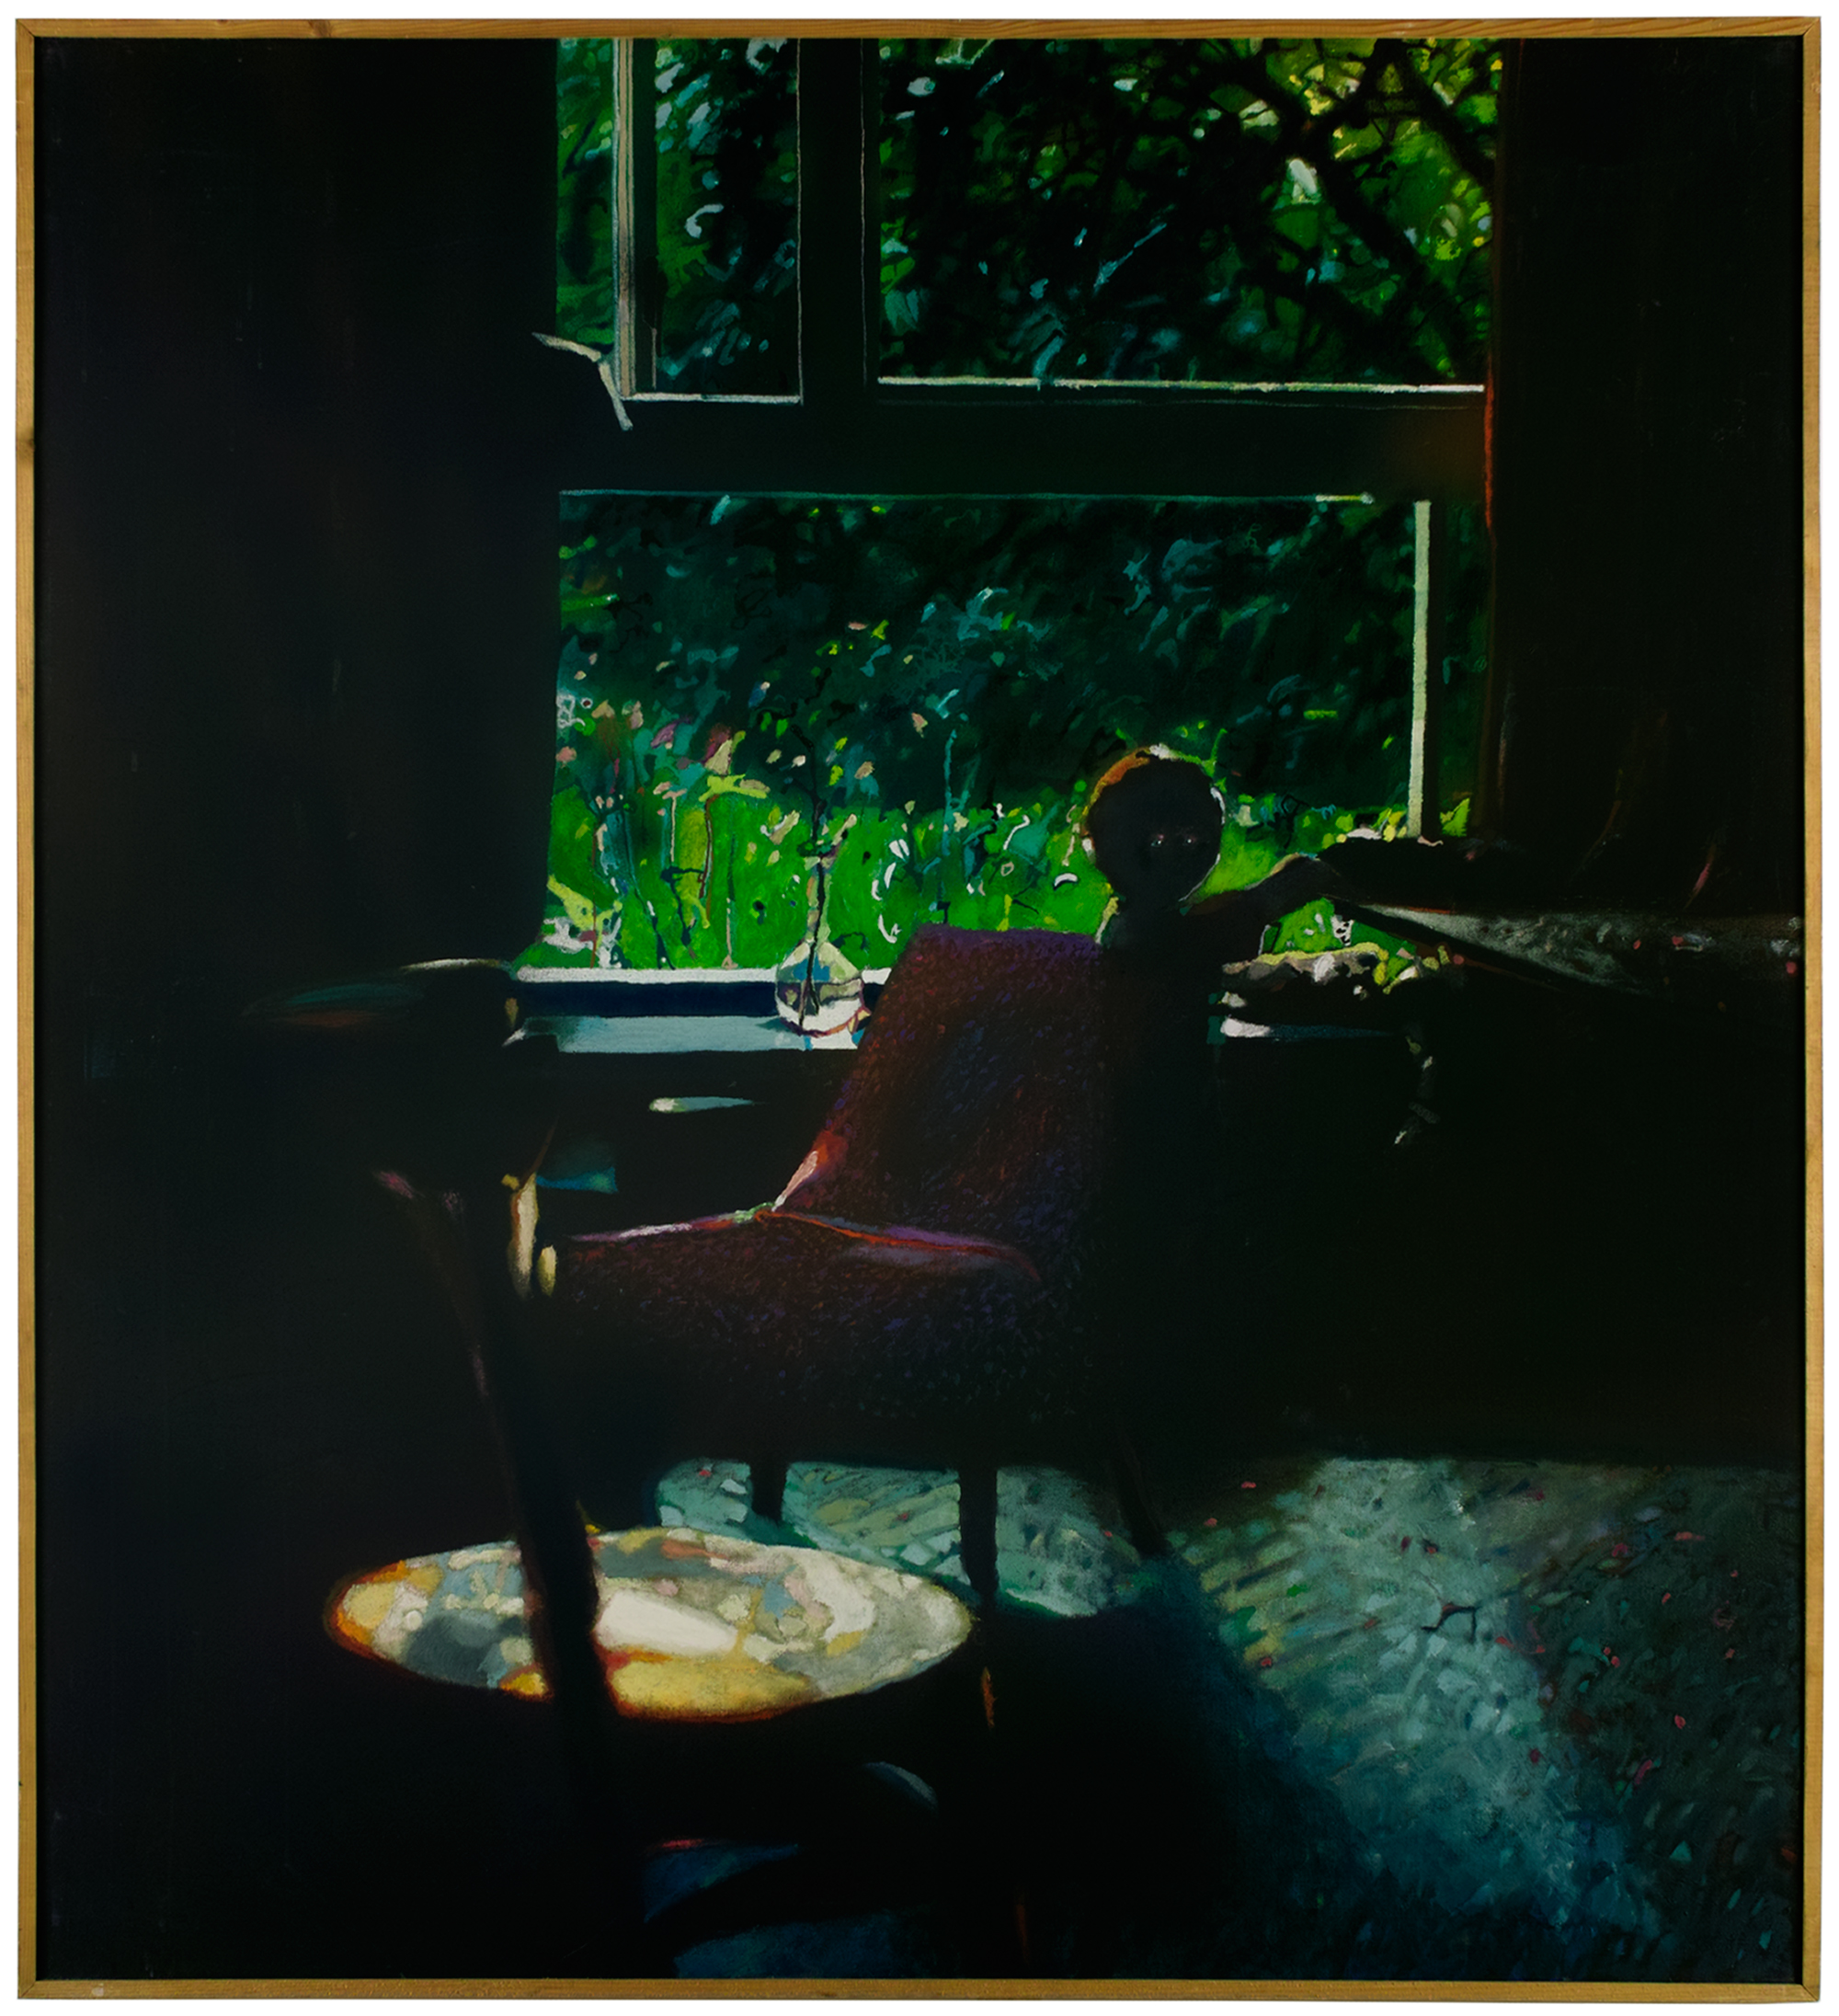 Zbysław M. Maciejewski, Nieoczekiwana obecność, 1983, olej, akryl na płótnie, 150 x 137 cm, kolekcja CSW „Znaki Czasu” w Toruniu